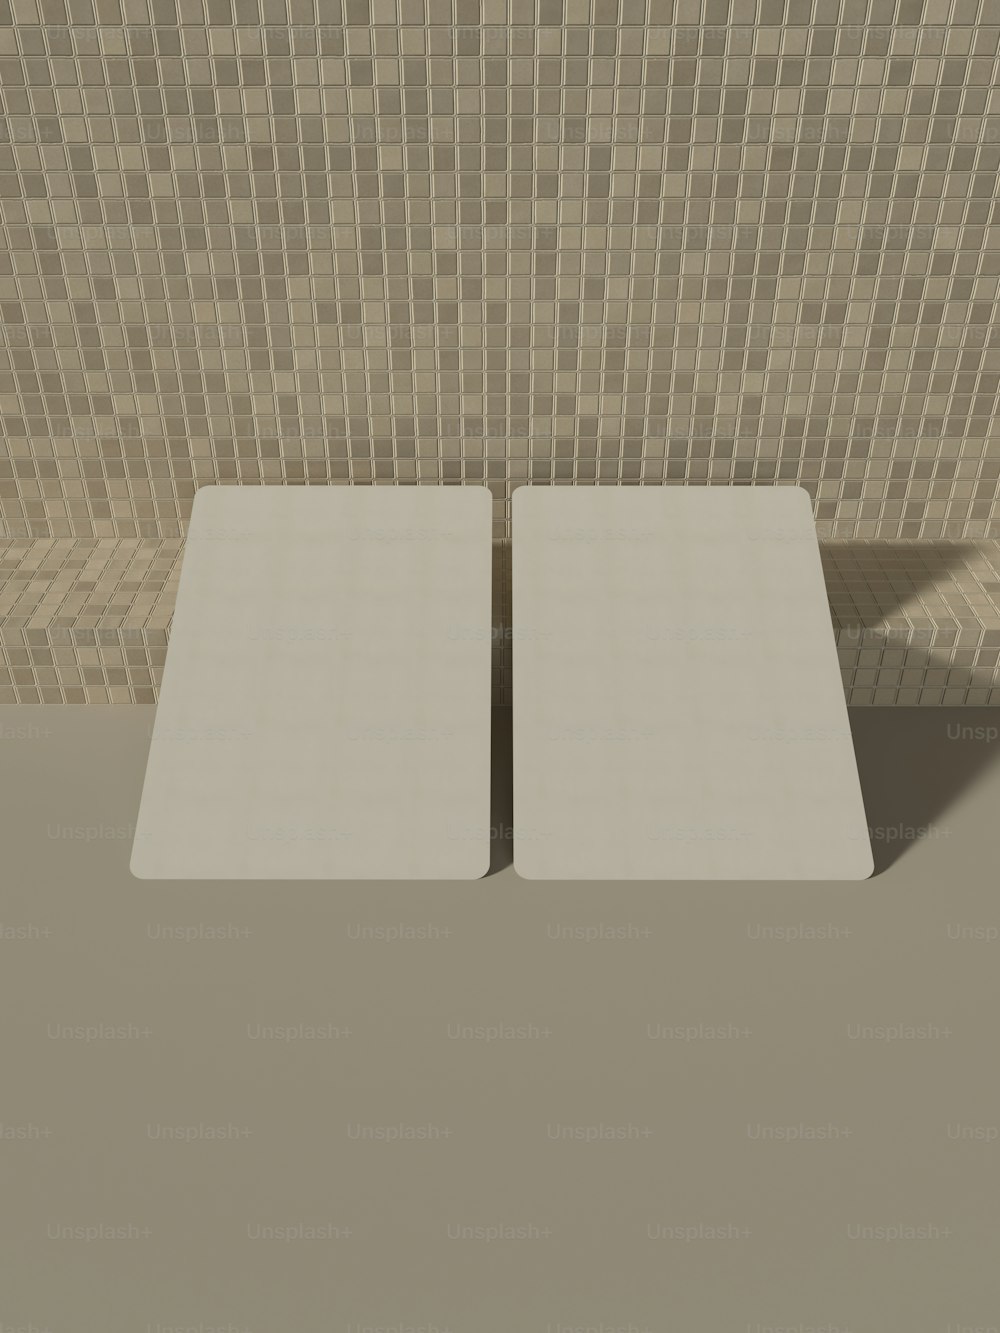 une paire de tables carrées blanches devant un mur carrelé